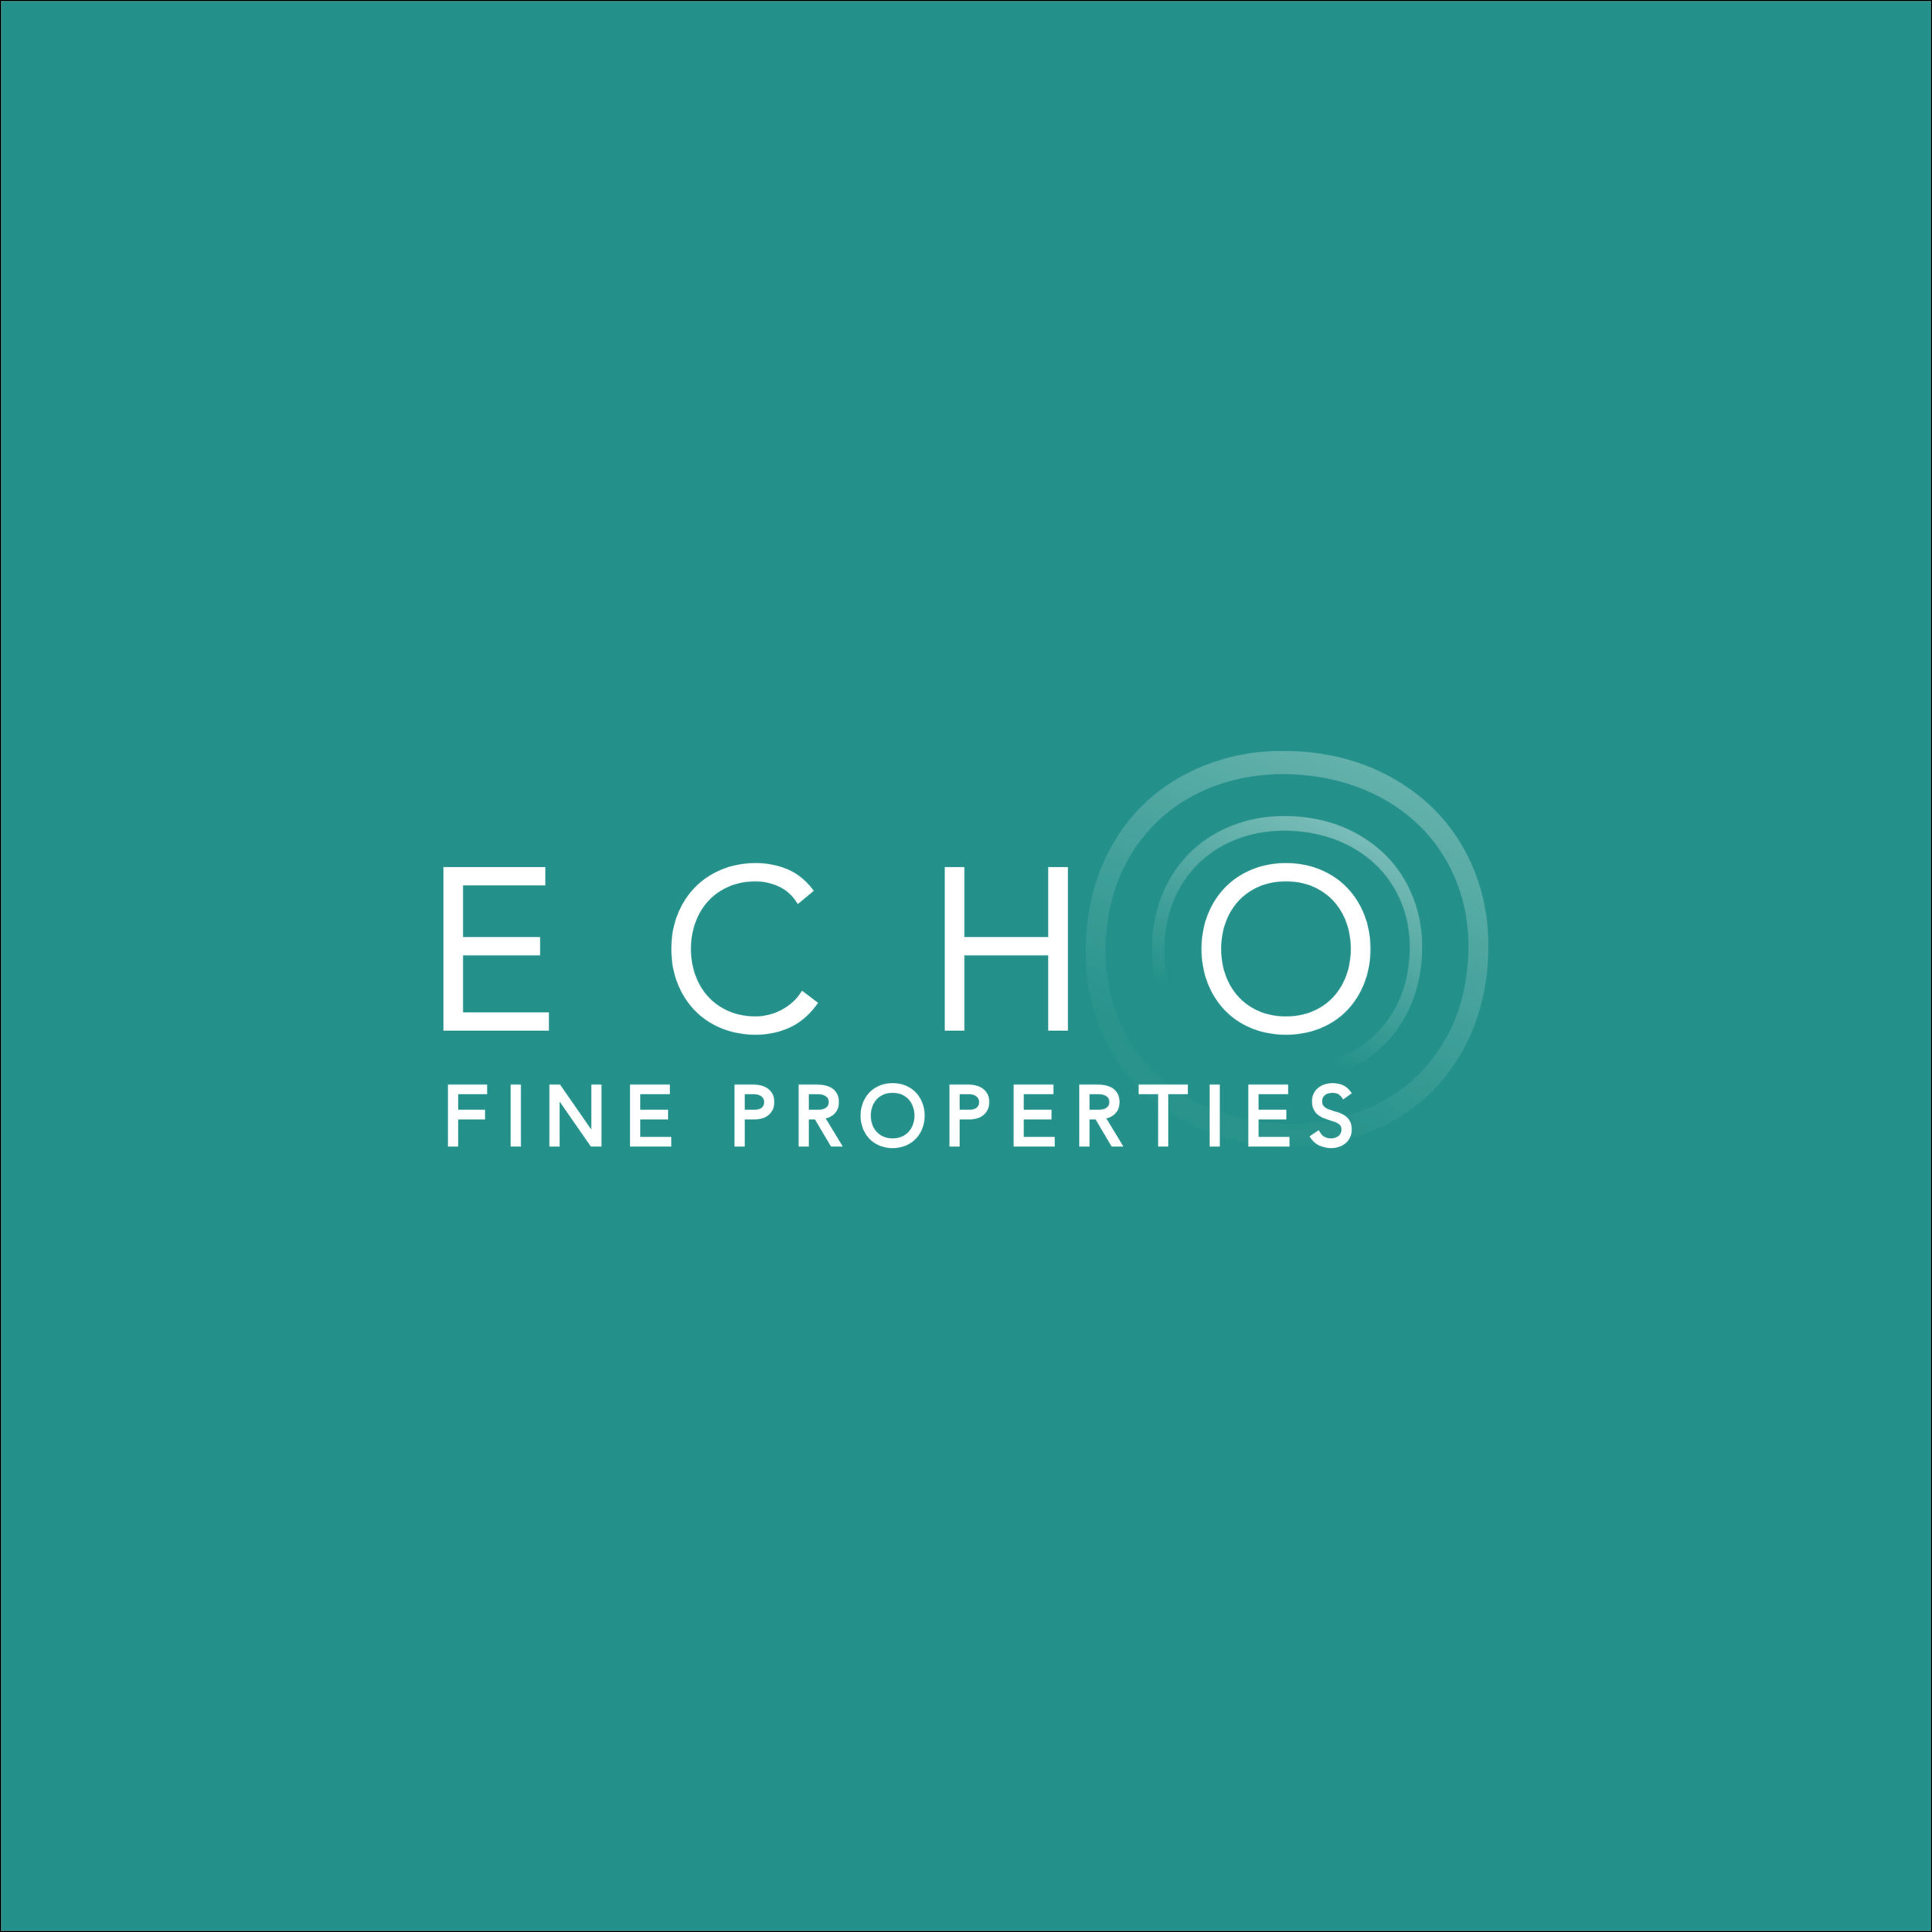 Echo Fine properties logo cmyk signage KO